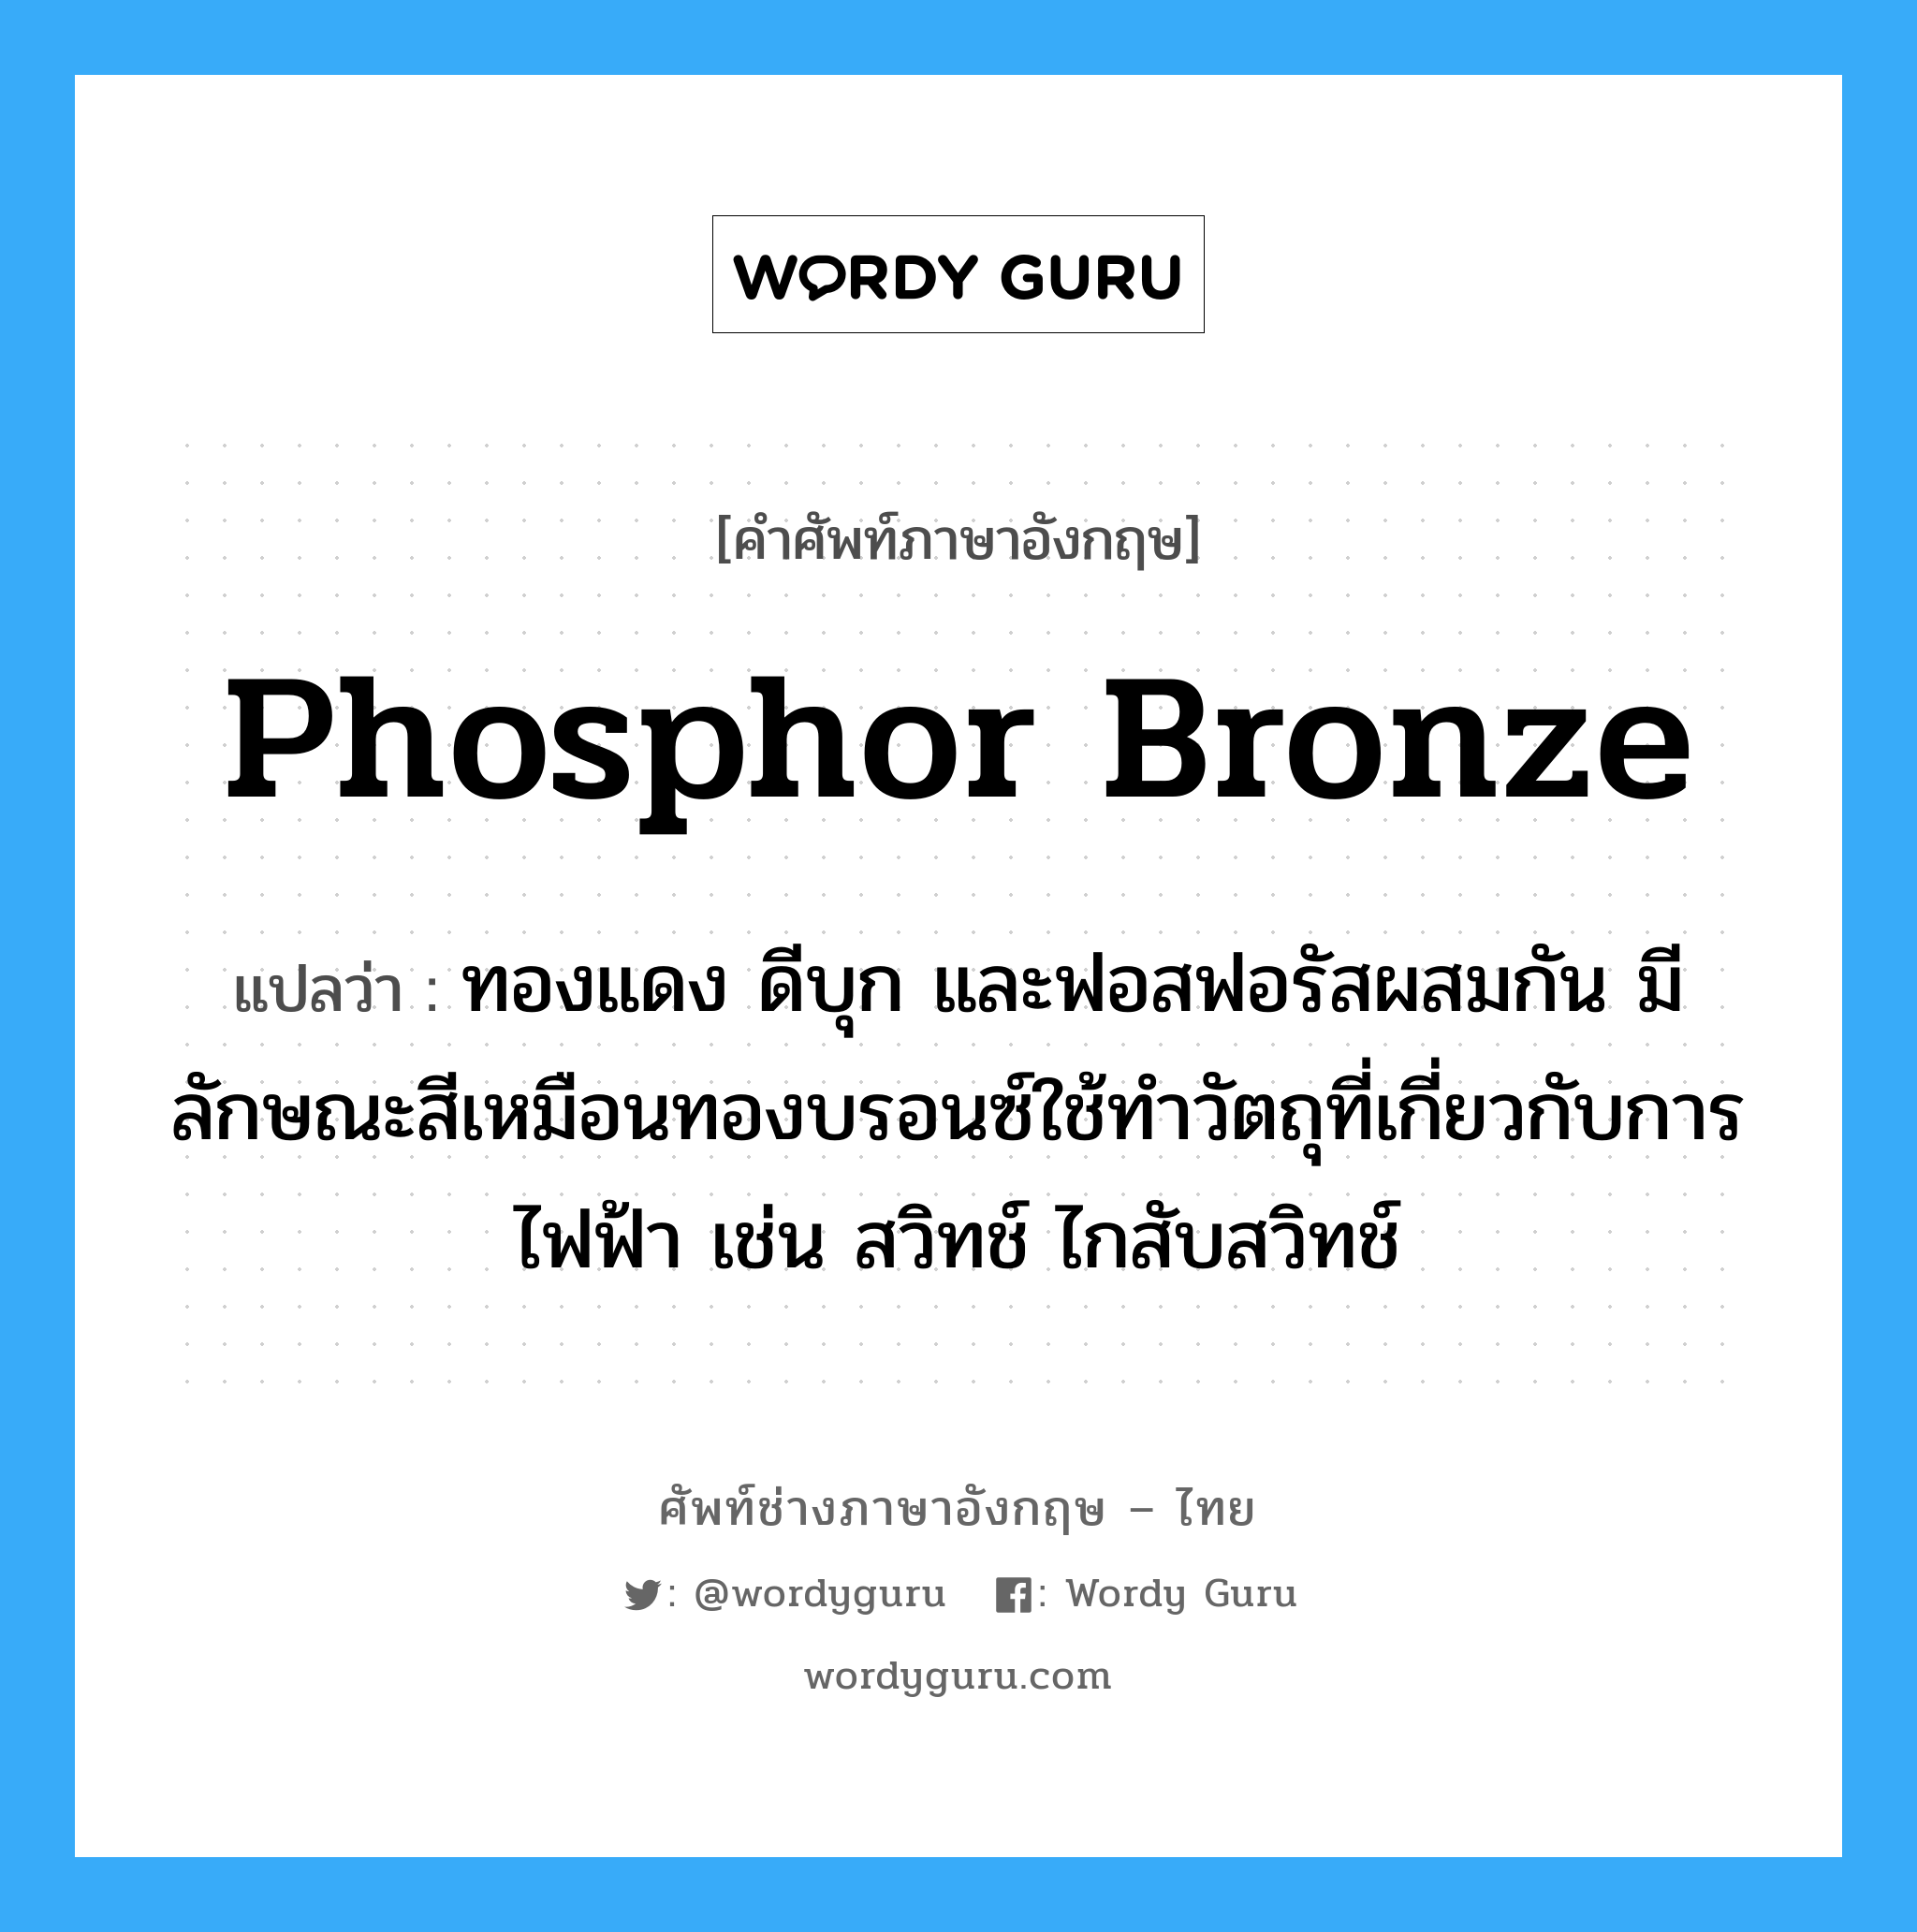 phosphor bronze แปลว่า?, คำศัพท์ช่างภาษาอังกฤษ - ไทย phosphor bronze คำศัพท์ภาษาอังกฤษ phosphor bronze แปลว่า ทองแดง ดีบุก และฟอสฟอรัสผสมกัน มีลักษณะสีเหมือนทองบรอนซ์ใช้ทำวัตถุที่เกี่ยวกับการไฟฟ้า เช่น สวิทช์ ไกสับสวิทช์